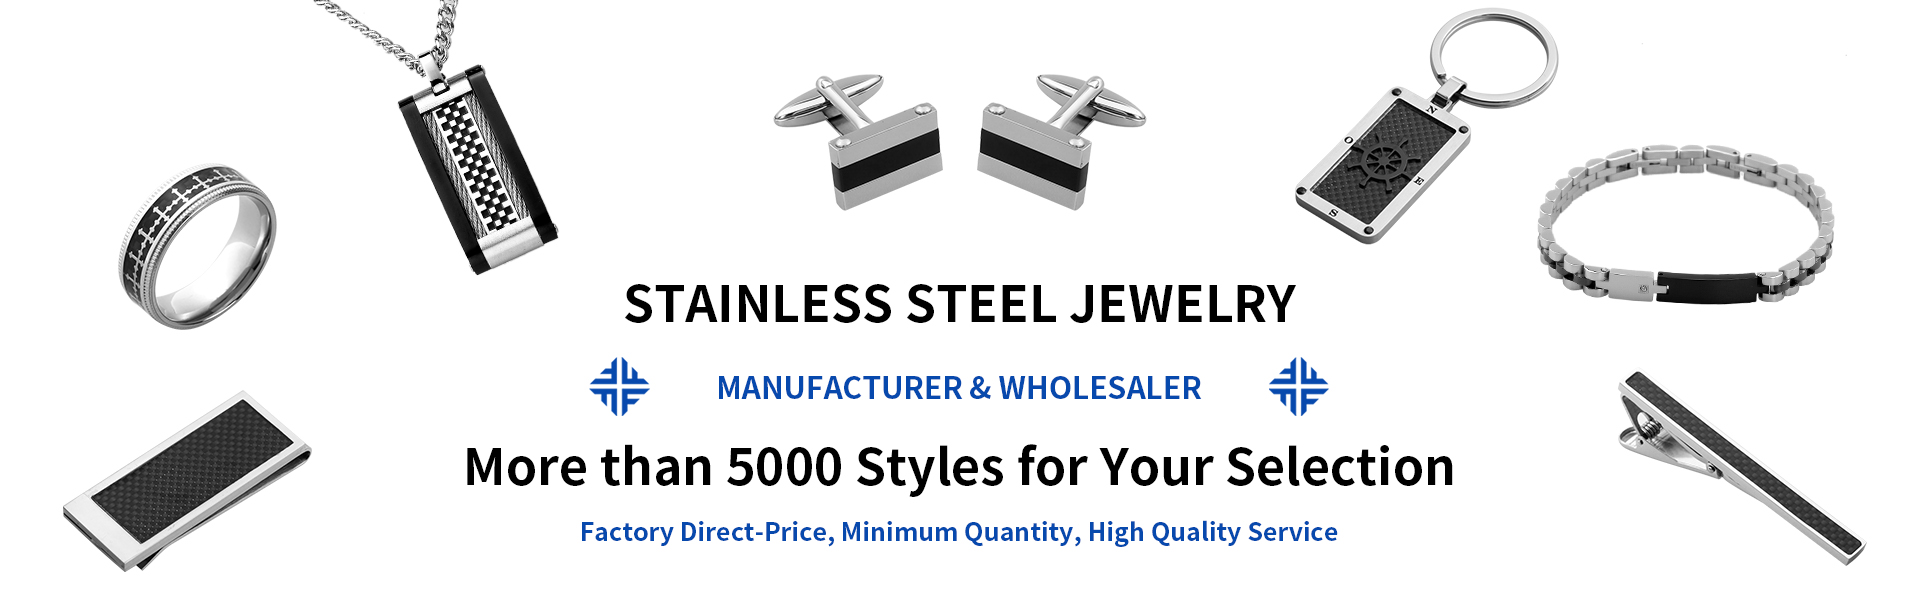 šperky z nerezové oceli, módní šperky a doplňky, velkoobchod a výrobce šperků,Dongguan Fullten Jewelry Co., Ltd